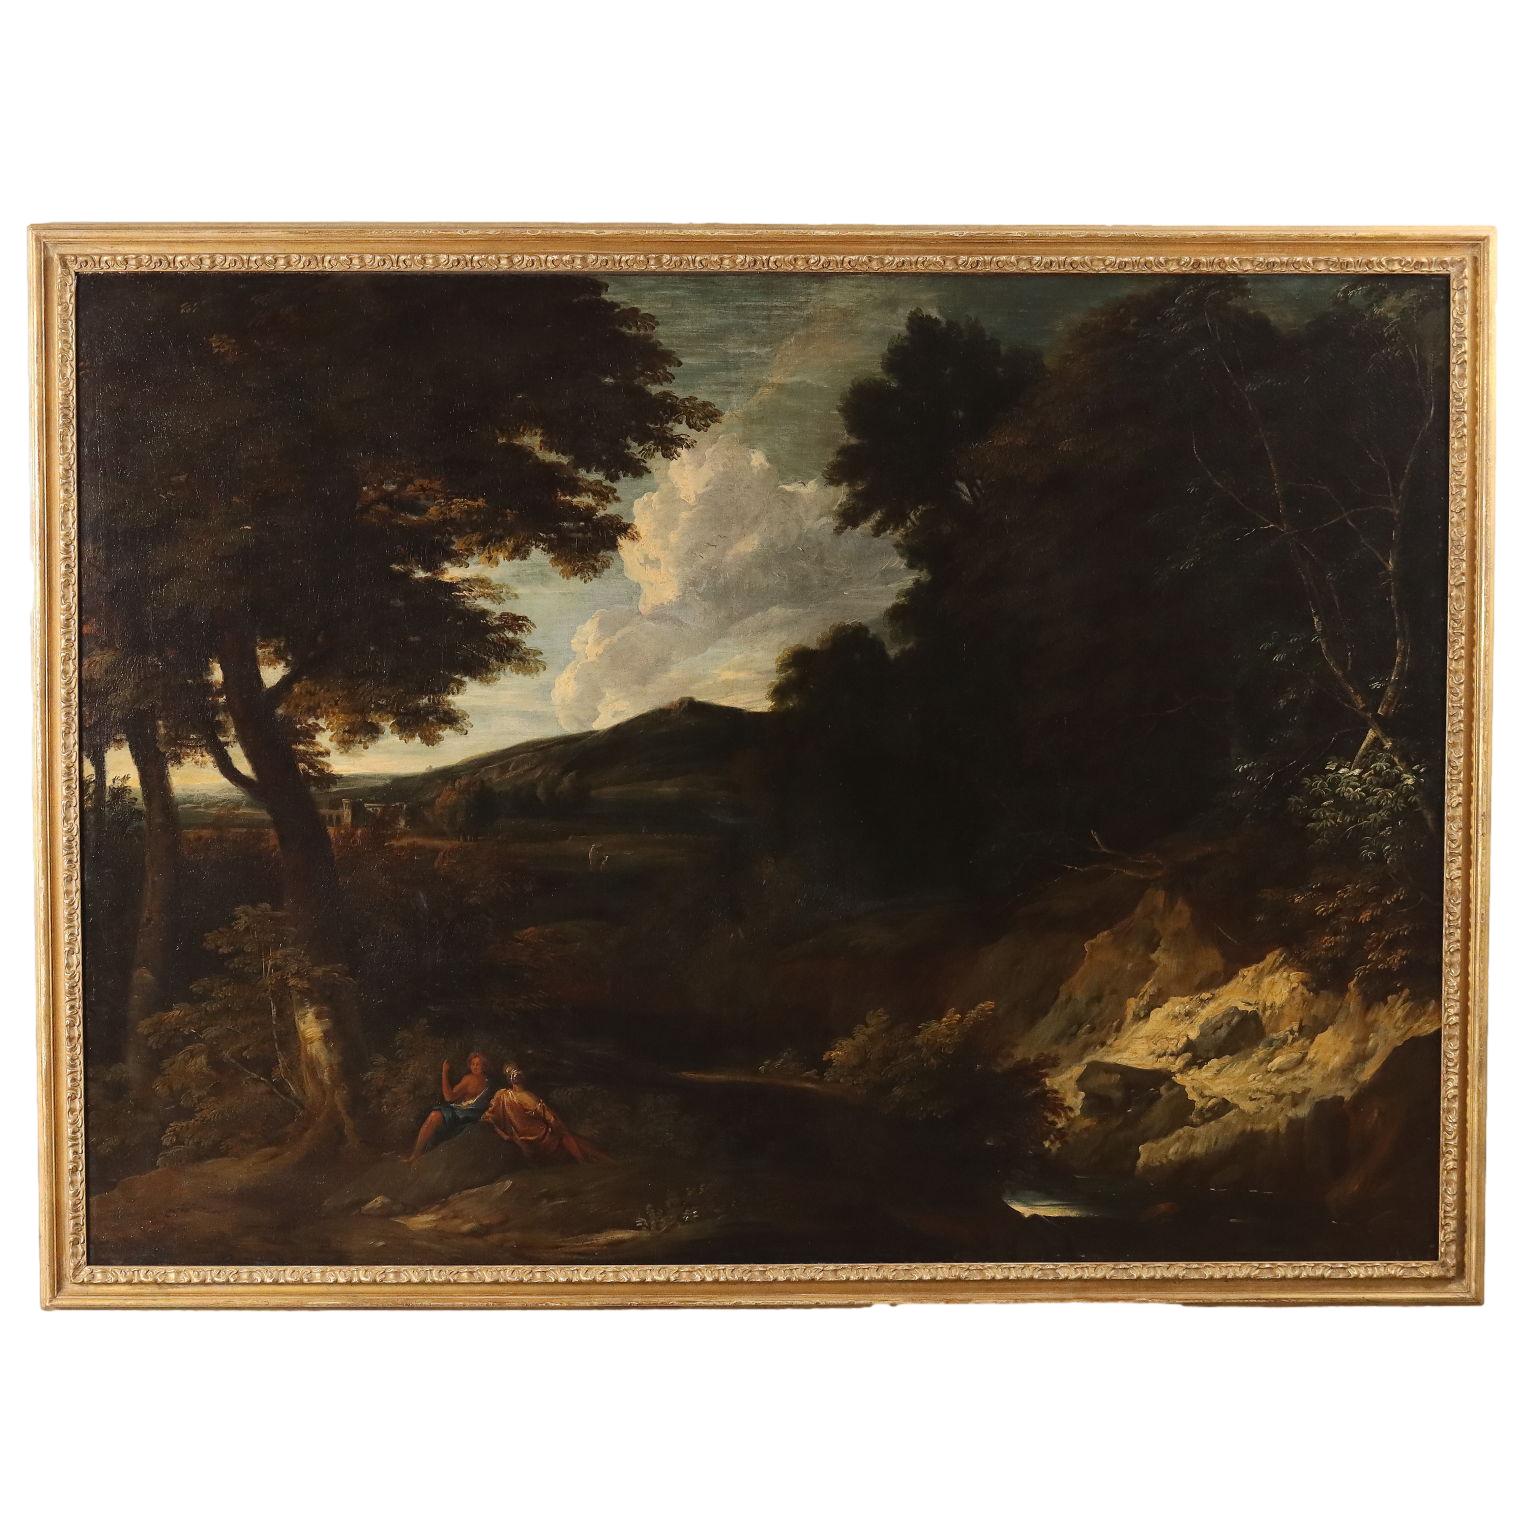 Unknown Landscape Painting – Große klassische Landschaft mit Figuren, 17. Jahrhundert